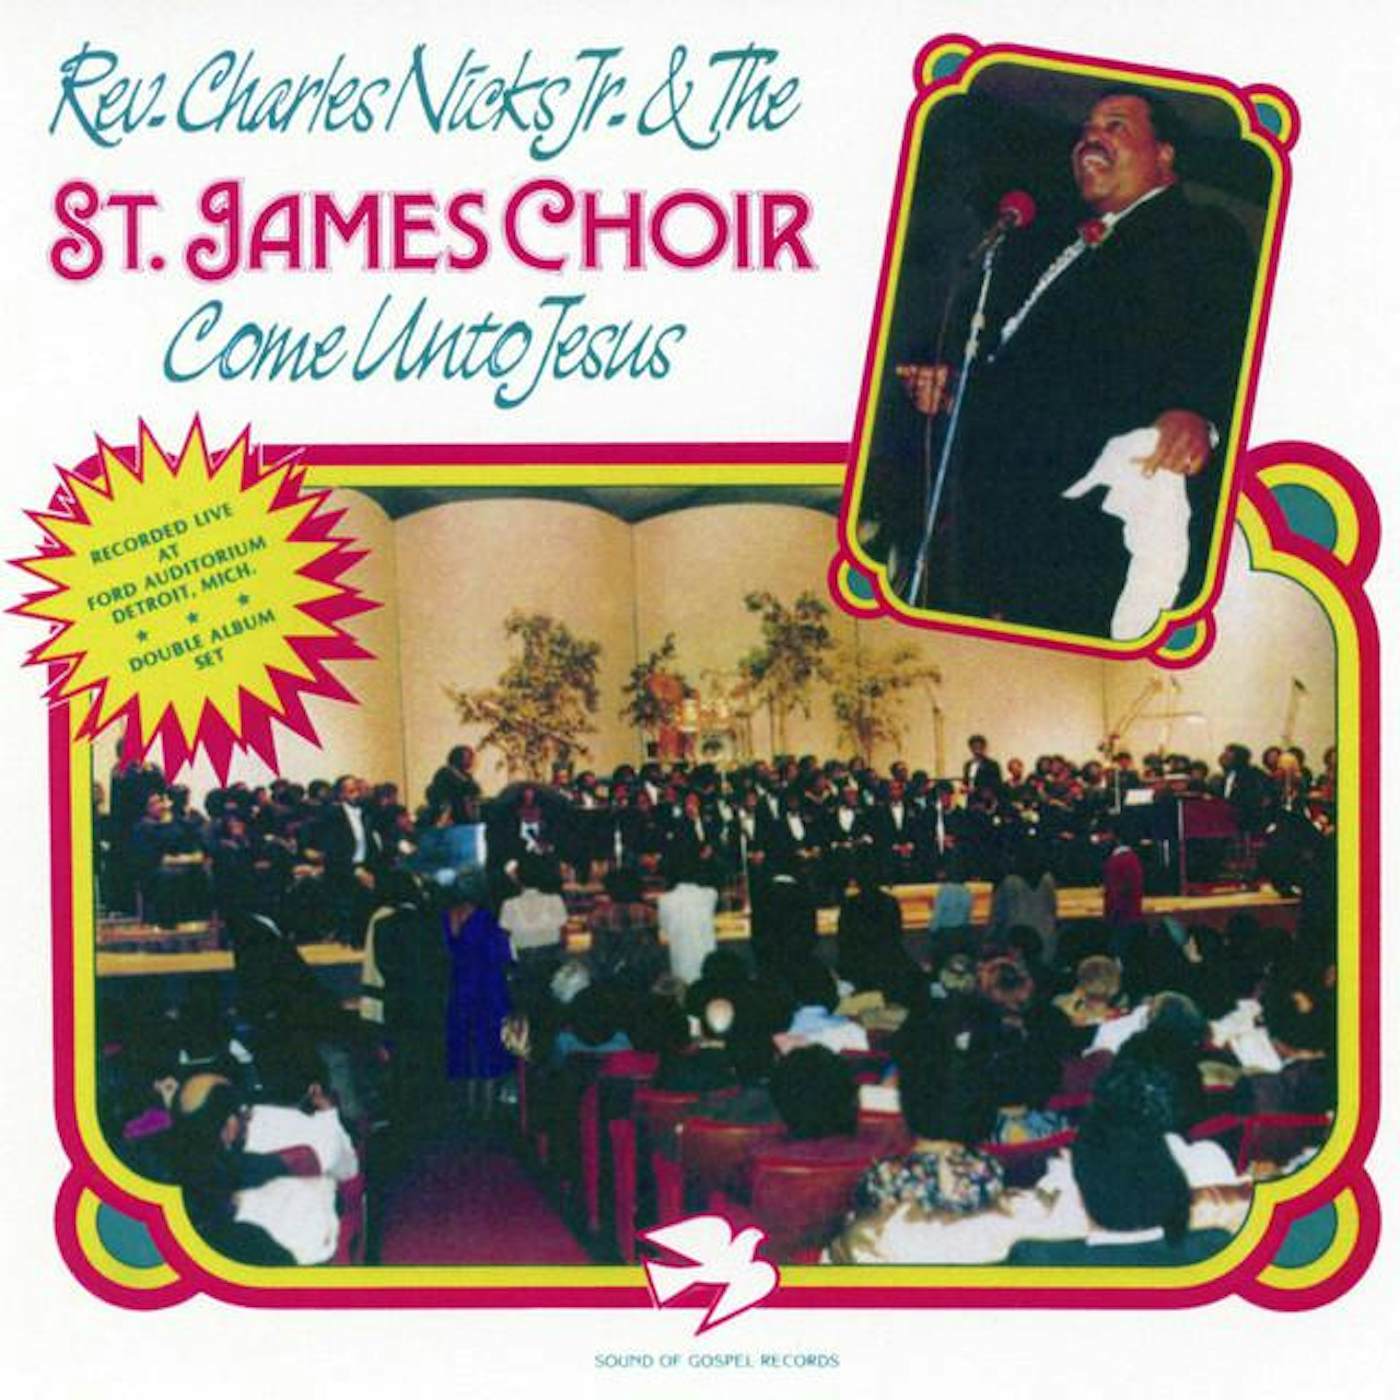 The St. James Choir